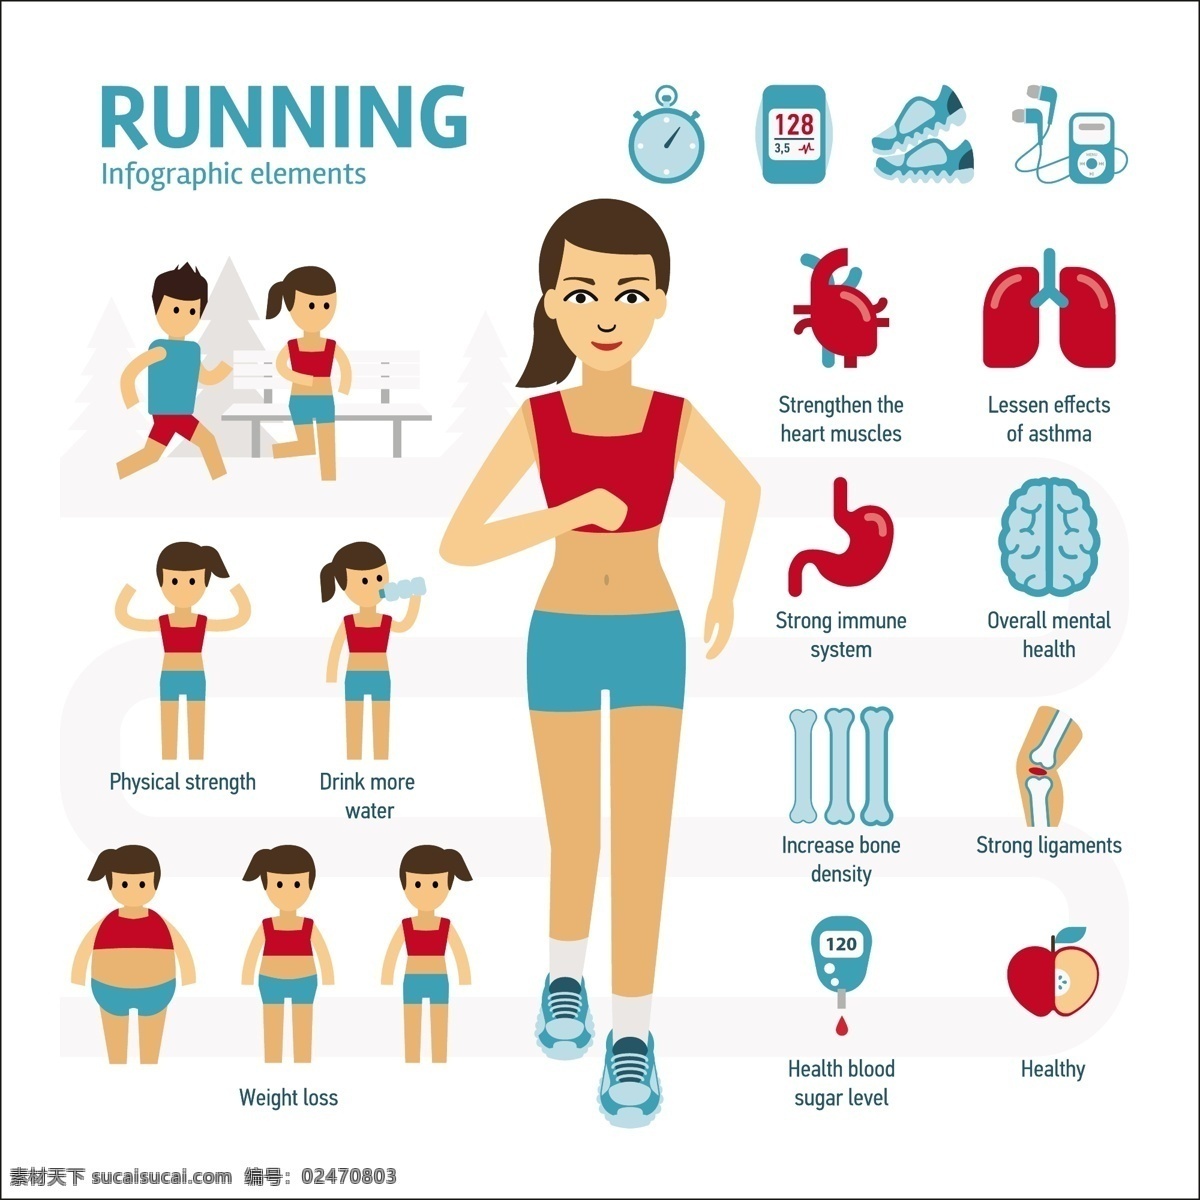 跑步 人物 体育运动 锻炼 健身 矢量 设计素材 女生 运动 肺活量 卡通 扁平化 动物 海报 装饰元素